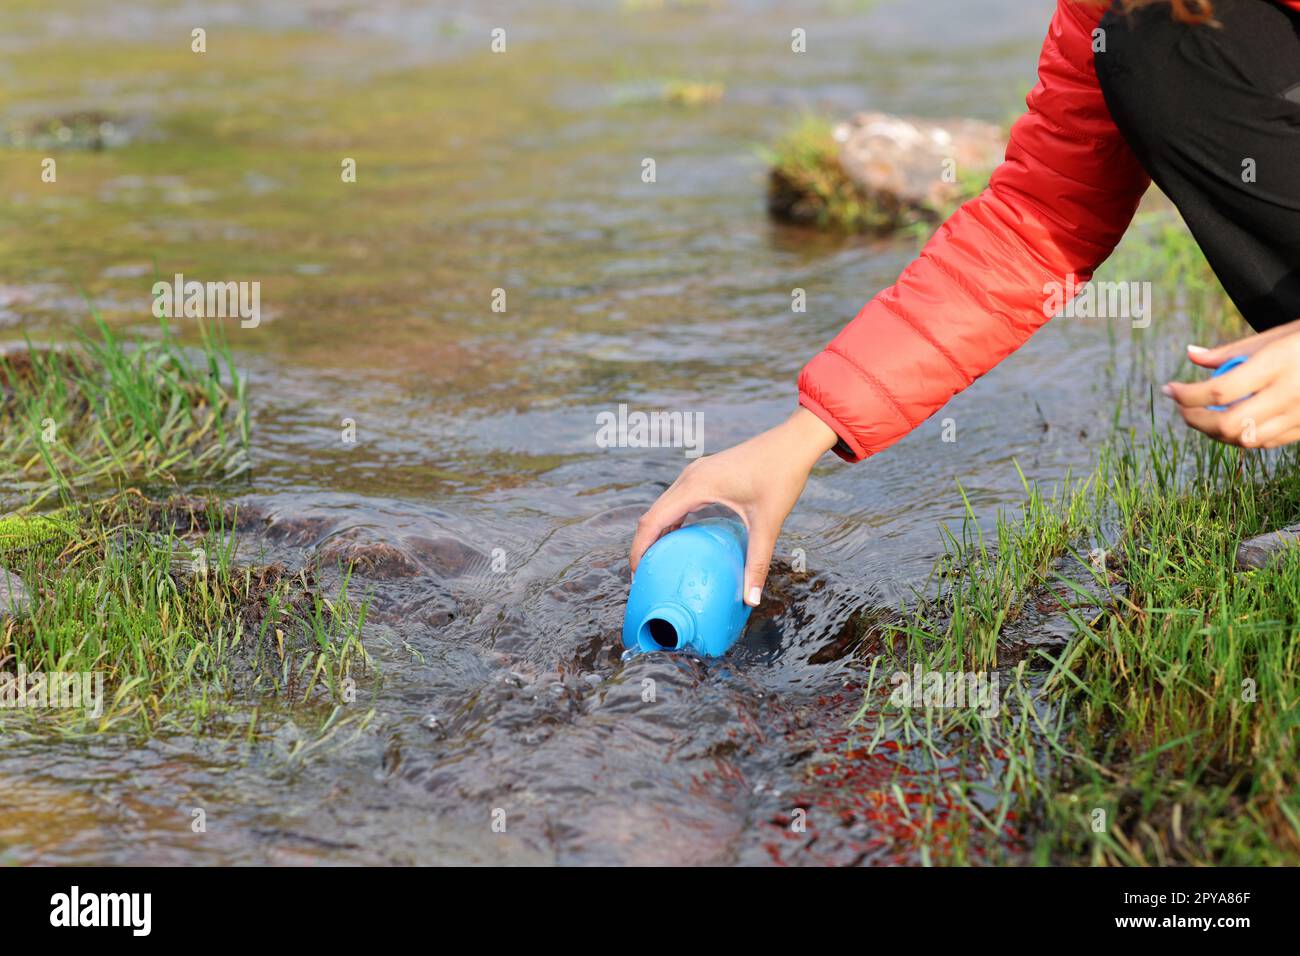 Escursionista che riempie la mensa con acqua non depurata del fiume Foto Stock